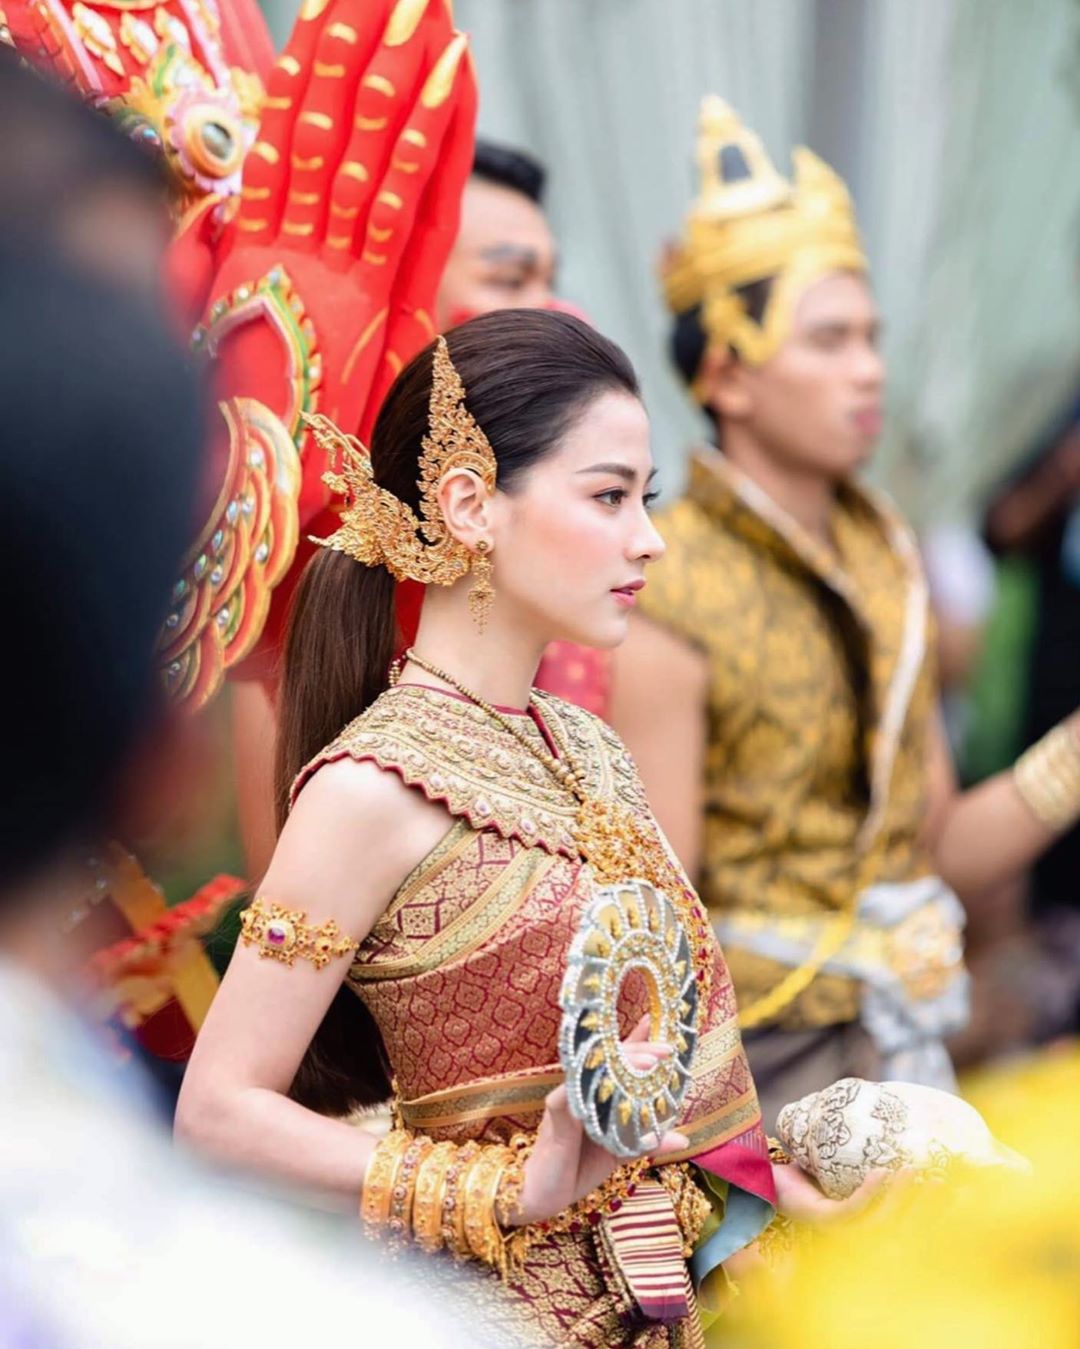 Mỹ nhân Thái Lan gây náo loạn đường phố vì đẹp như tiên nữ hạ phàm - 7